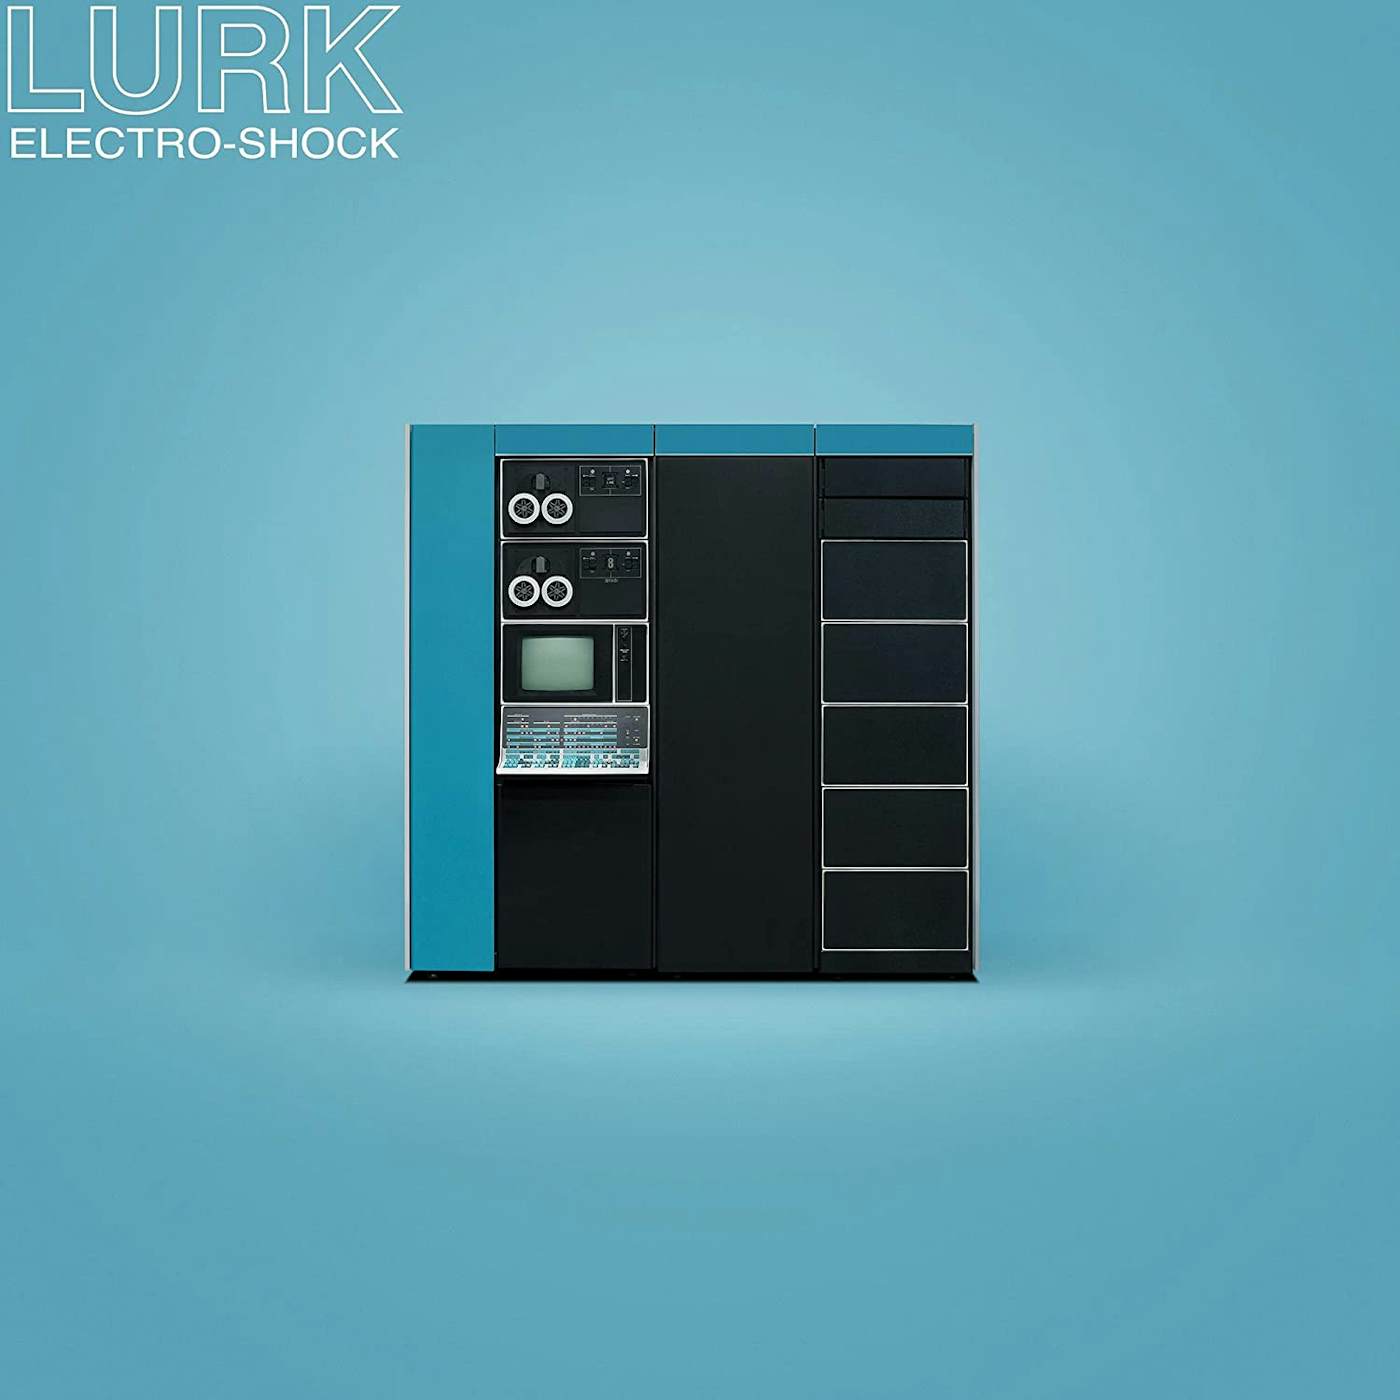 LURK Electro-Shock Vinyl Record